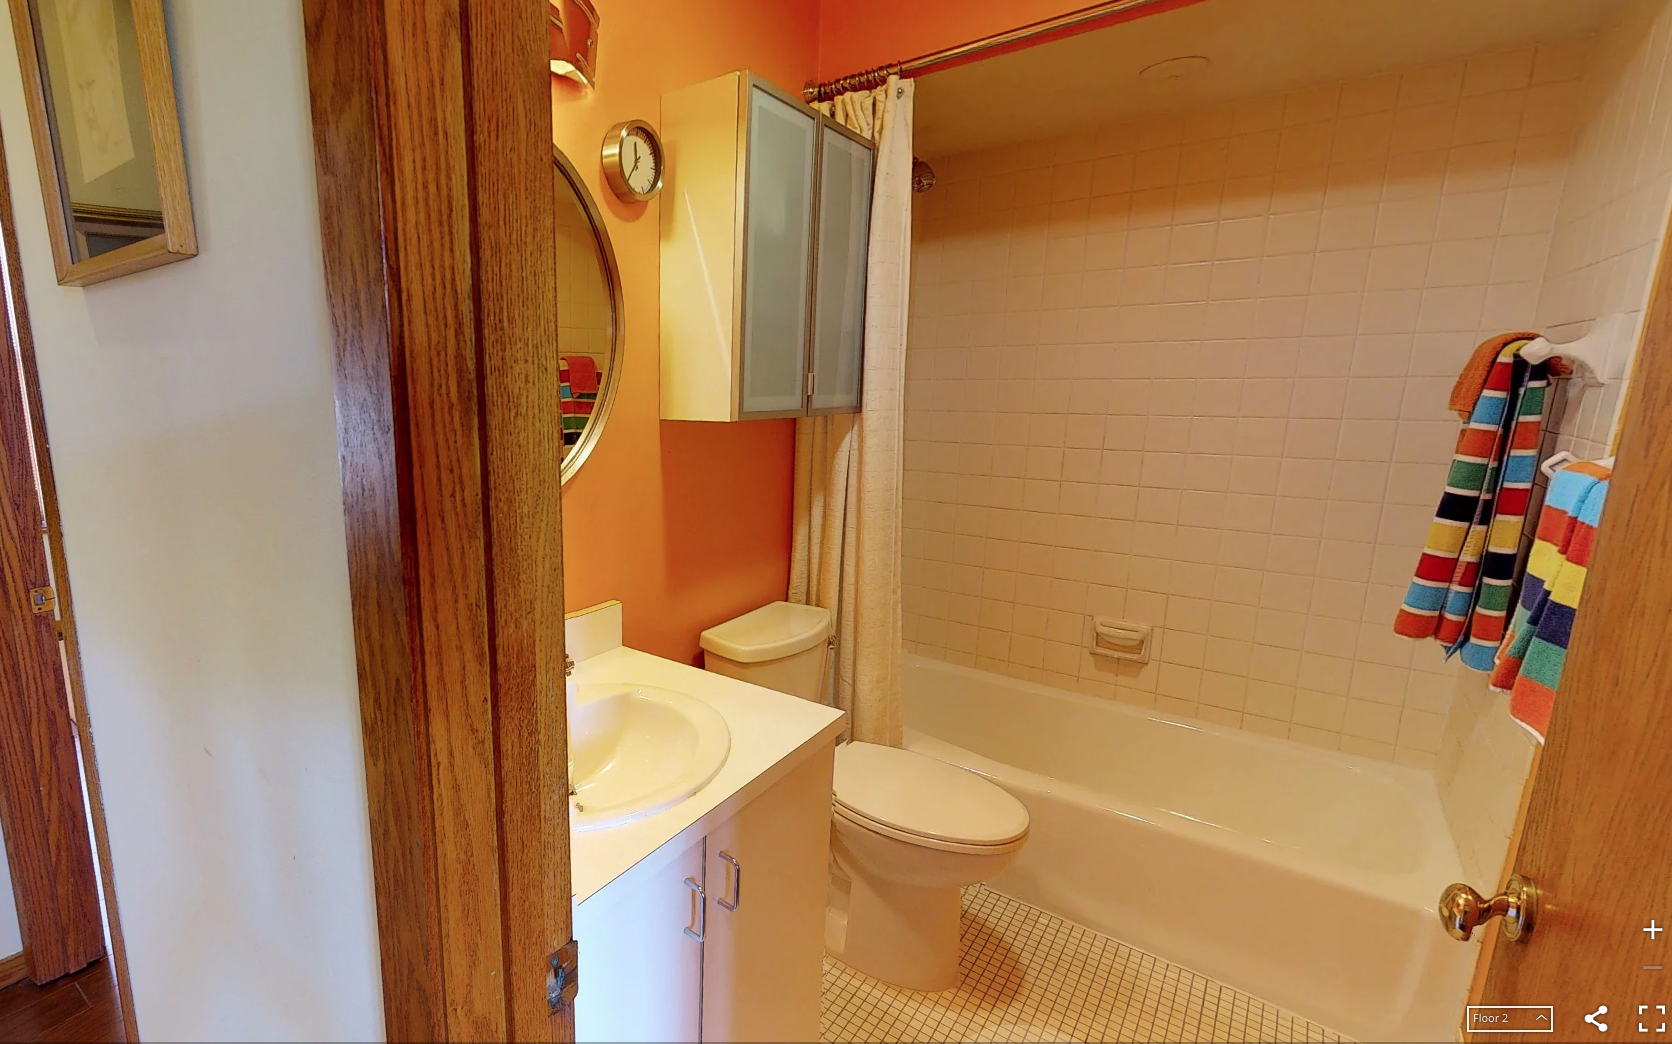 Before orange bathroom remodel